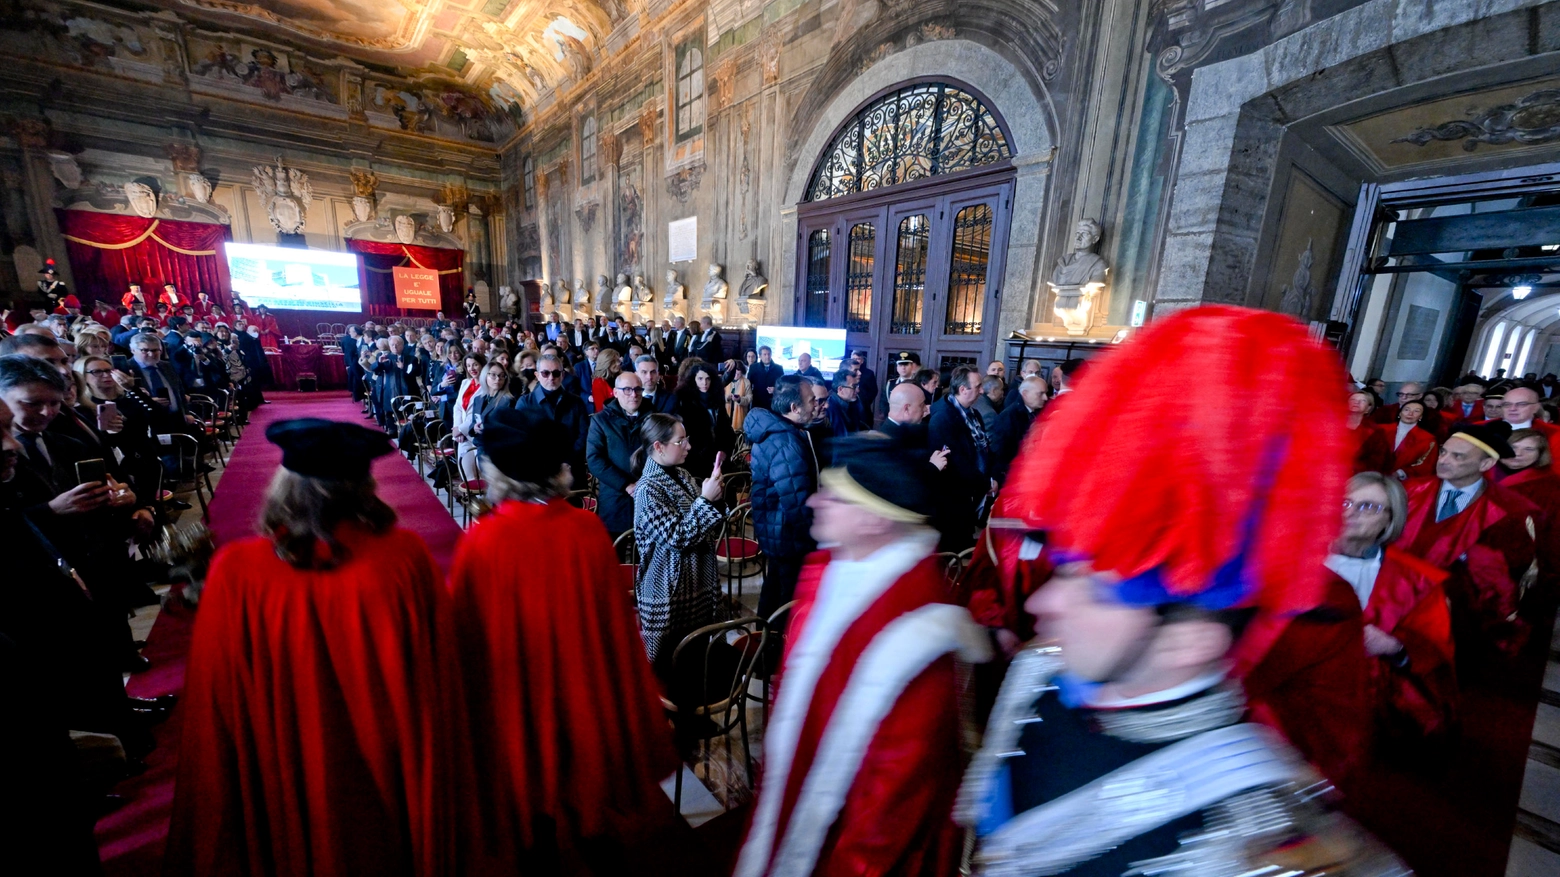 Napoli, Salone dei Busti di Castel Capuano: cerimonia di inaugurazione anno giudiziario